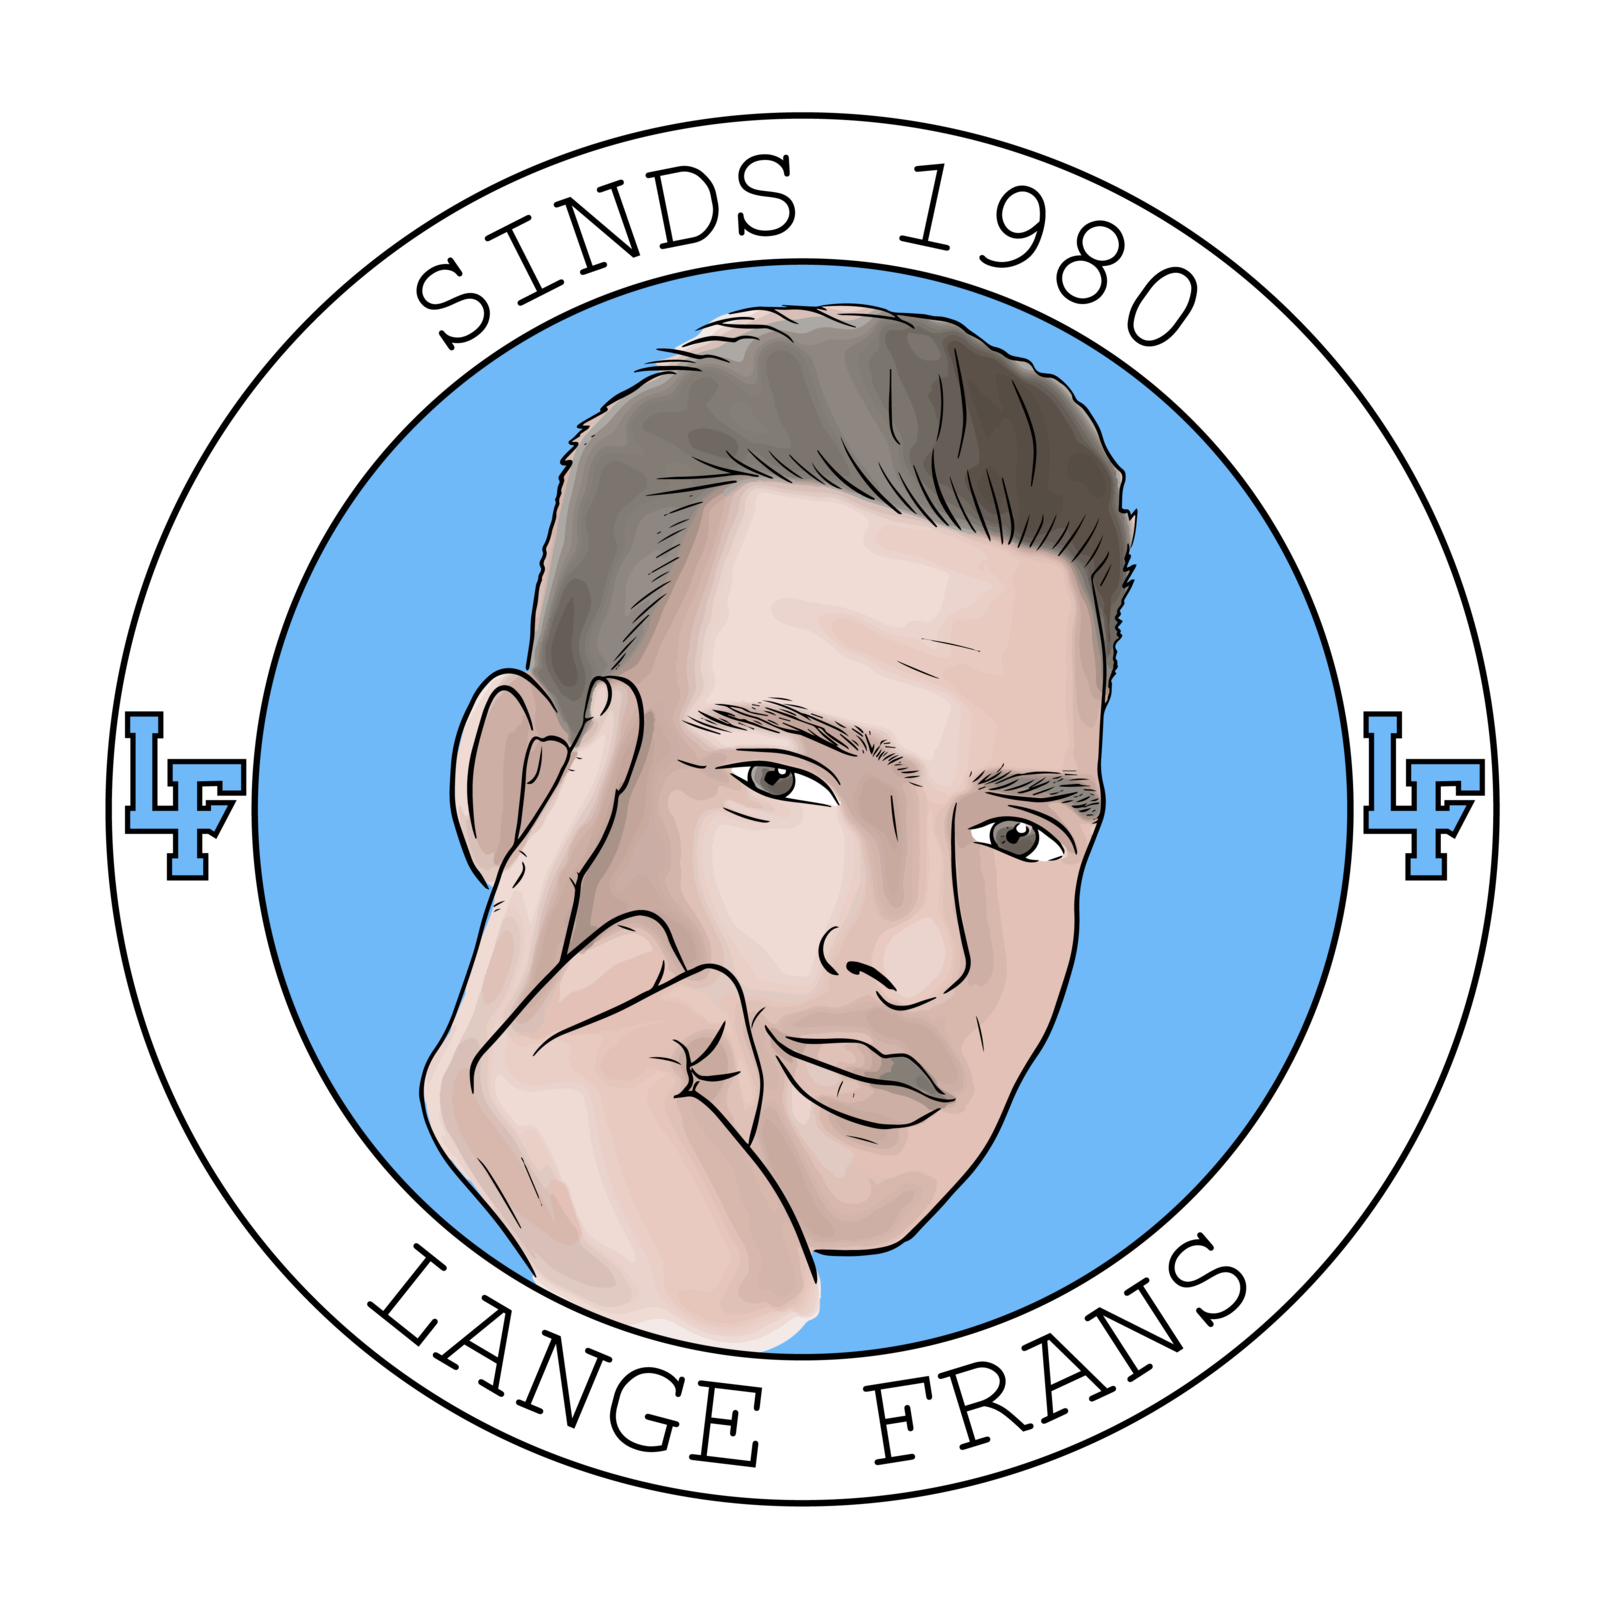 Lange Frans de Podcast logo